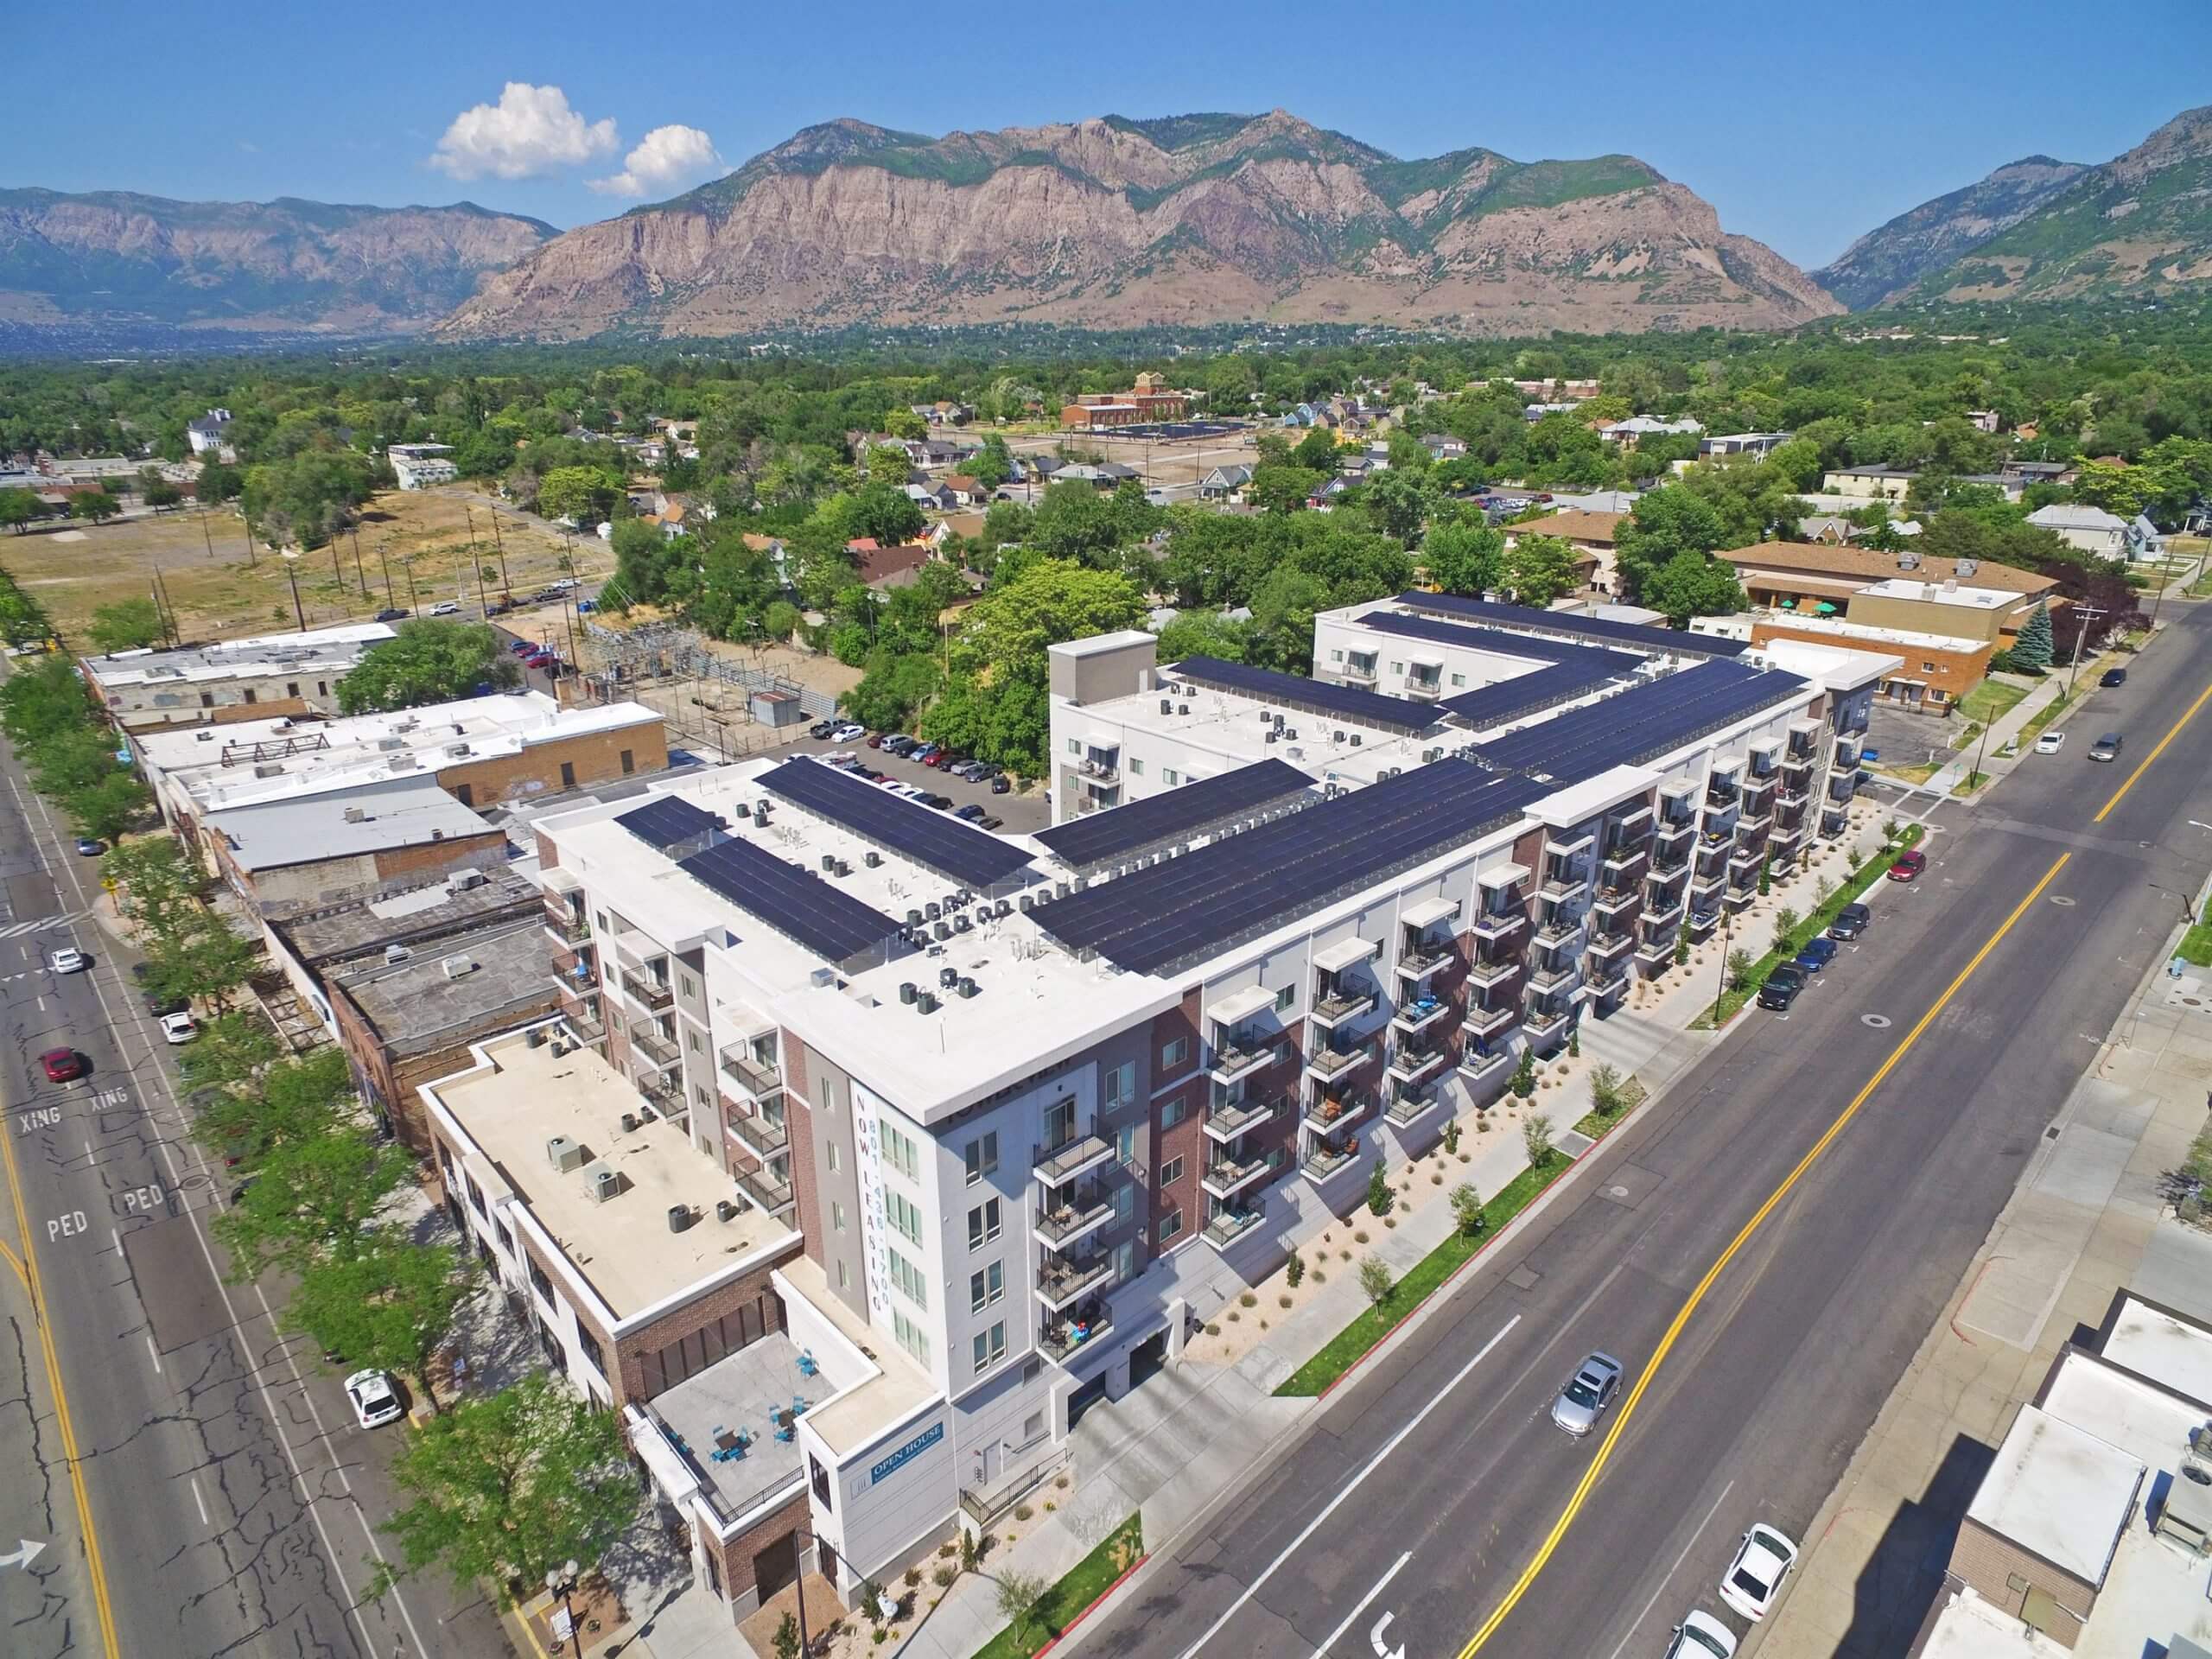 condominium with solar panel system